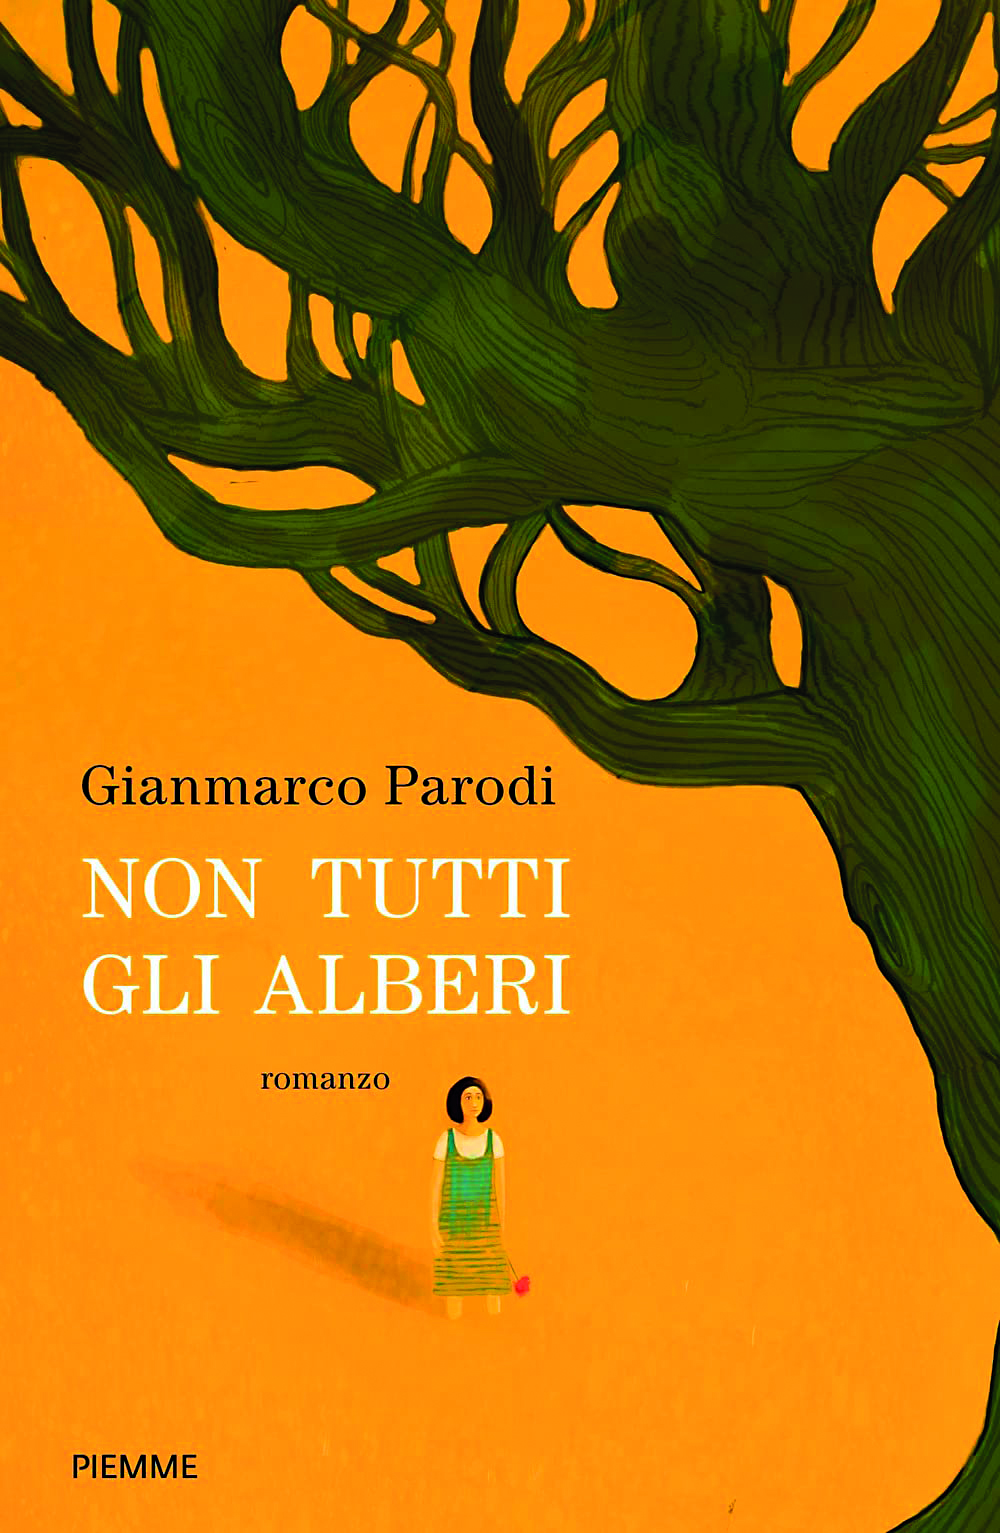 Gianmarco Parodi e il suo libro, un’avventura che parte da Sanremo